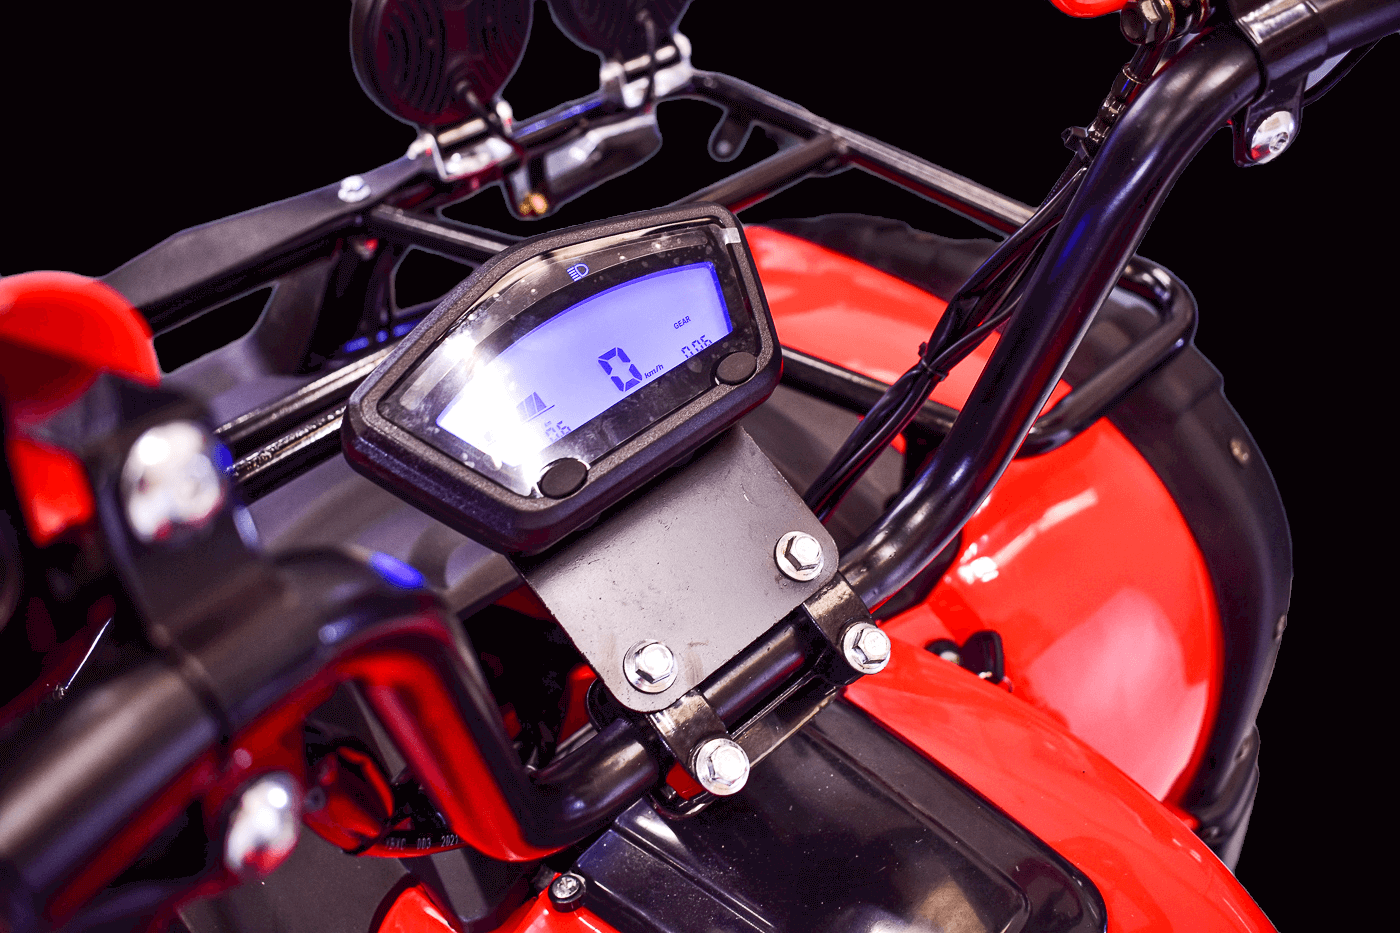 Pantalla LCD Eco Rider